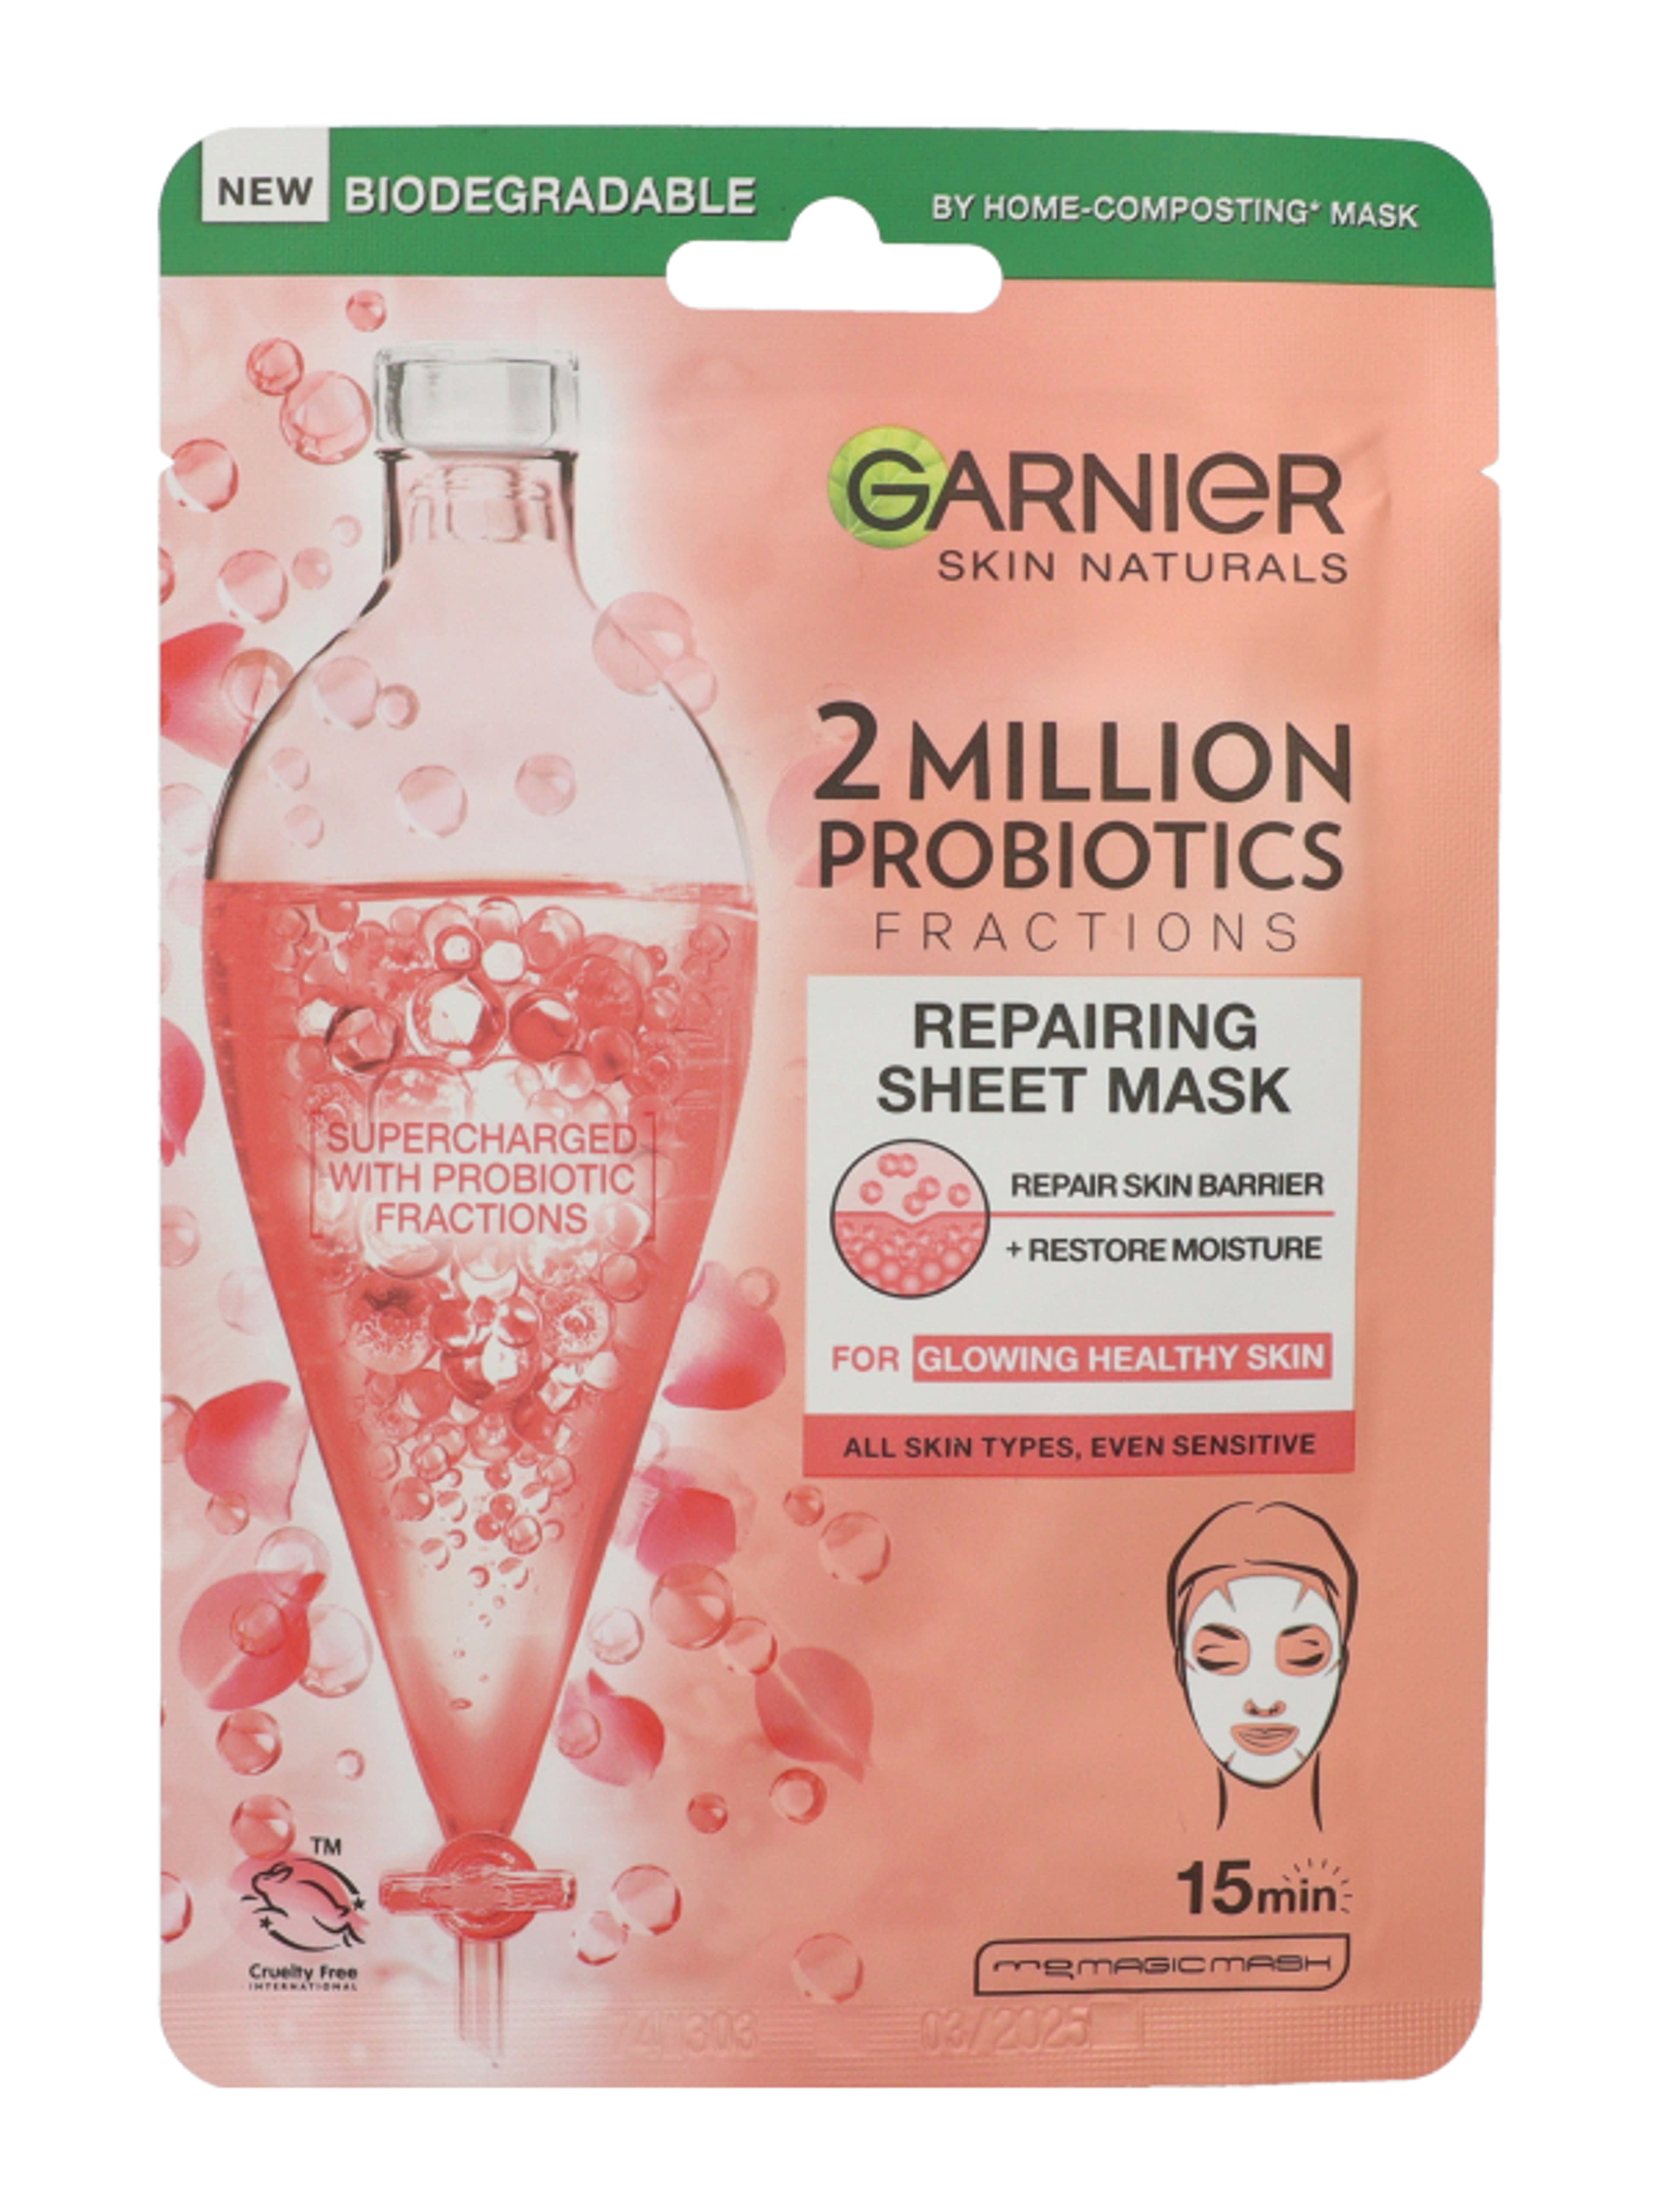 Garnier Skin Naturals texilmaszk probiotikummal  - 1 db-1